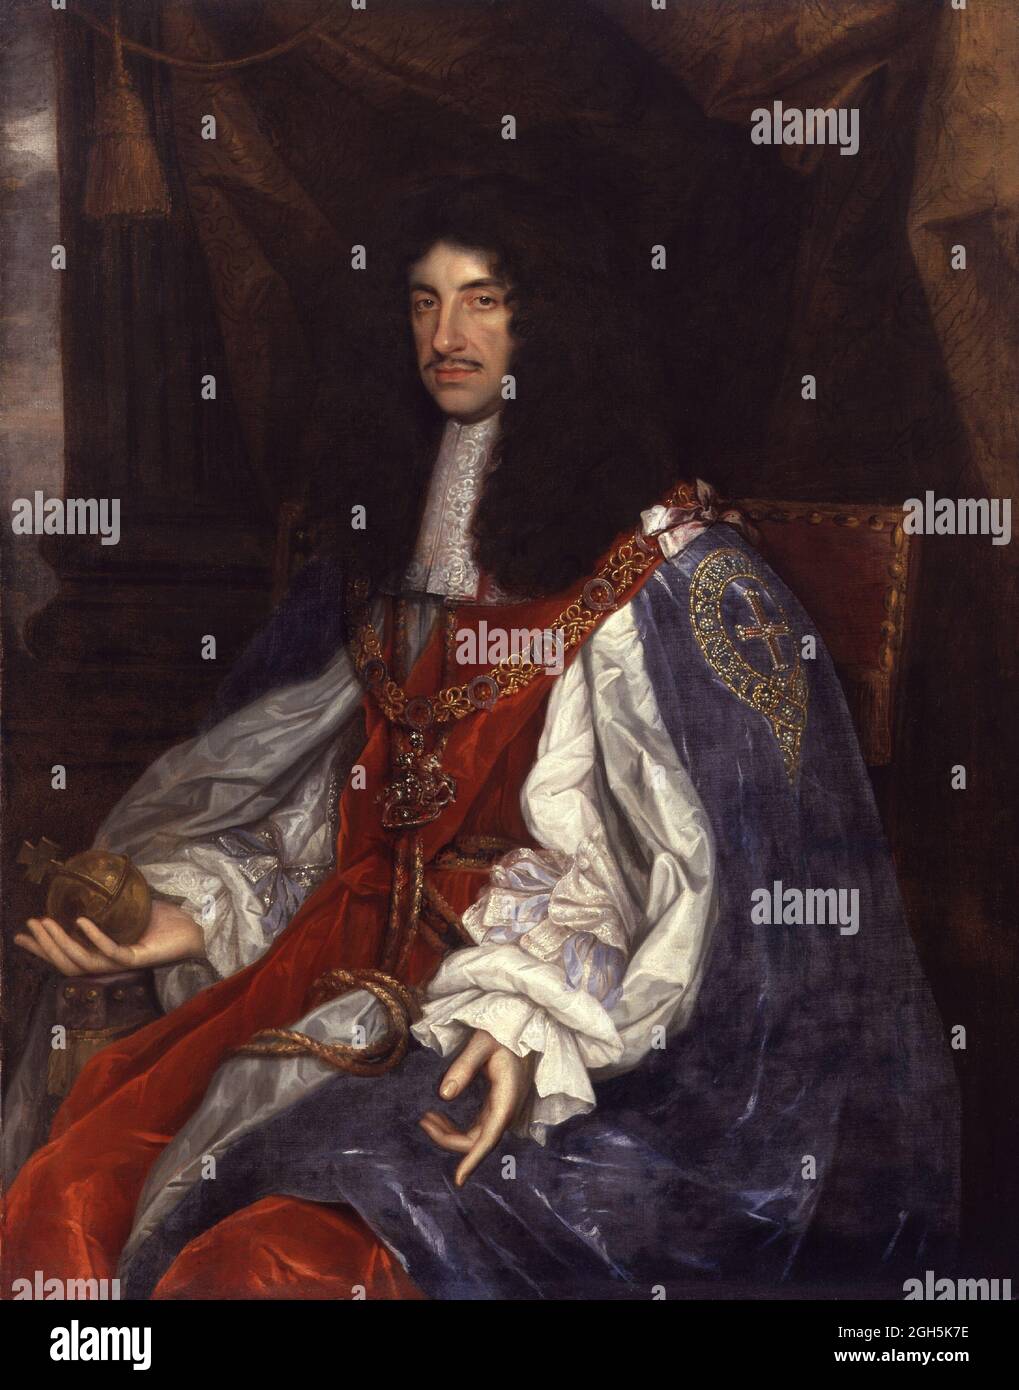 Ritratto di Re Carlo II che fu Re d'Inghilterra dal 1660 al 1685 Foto Stock